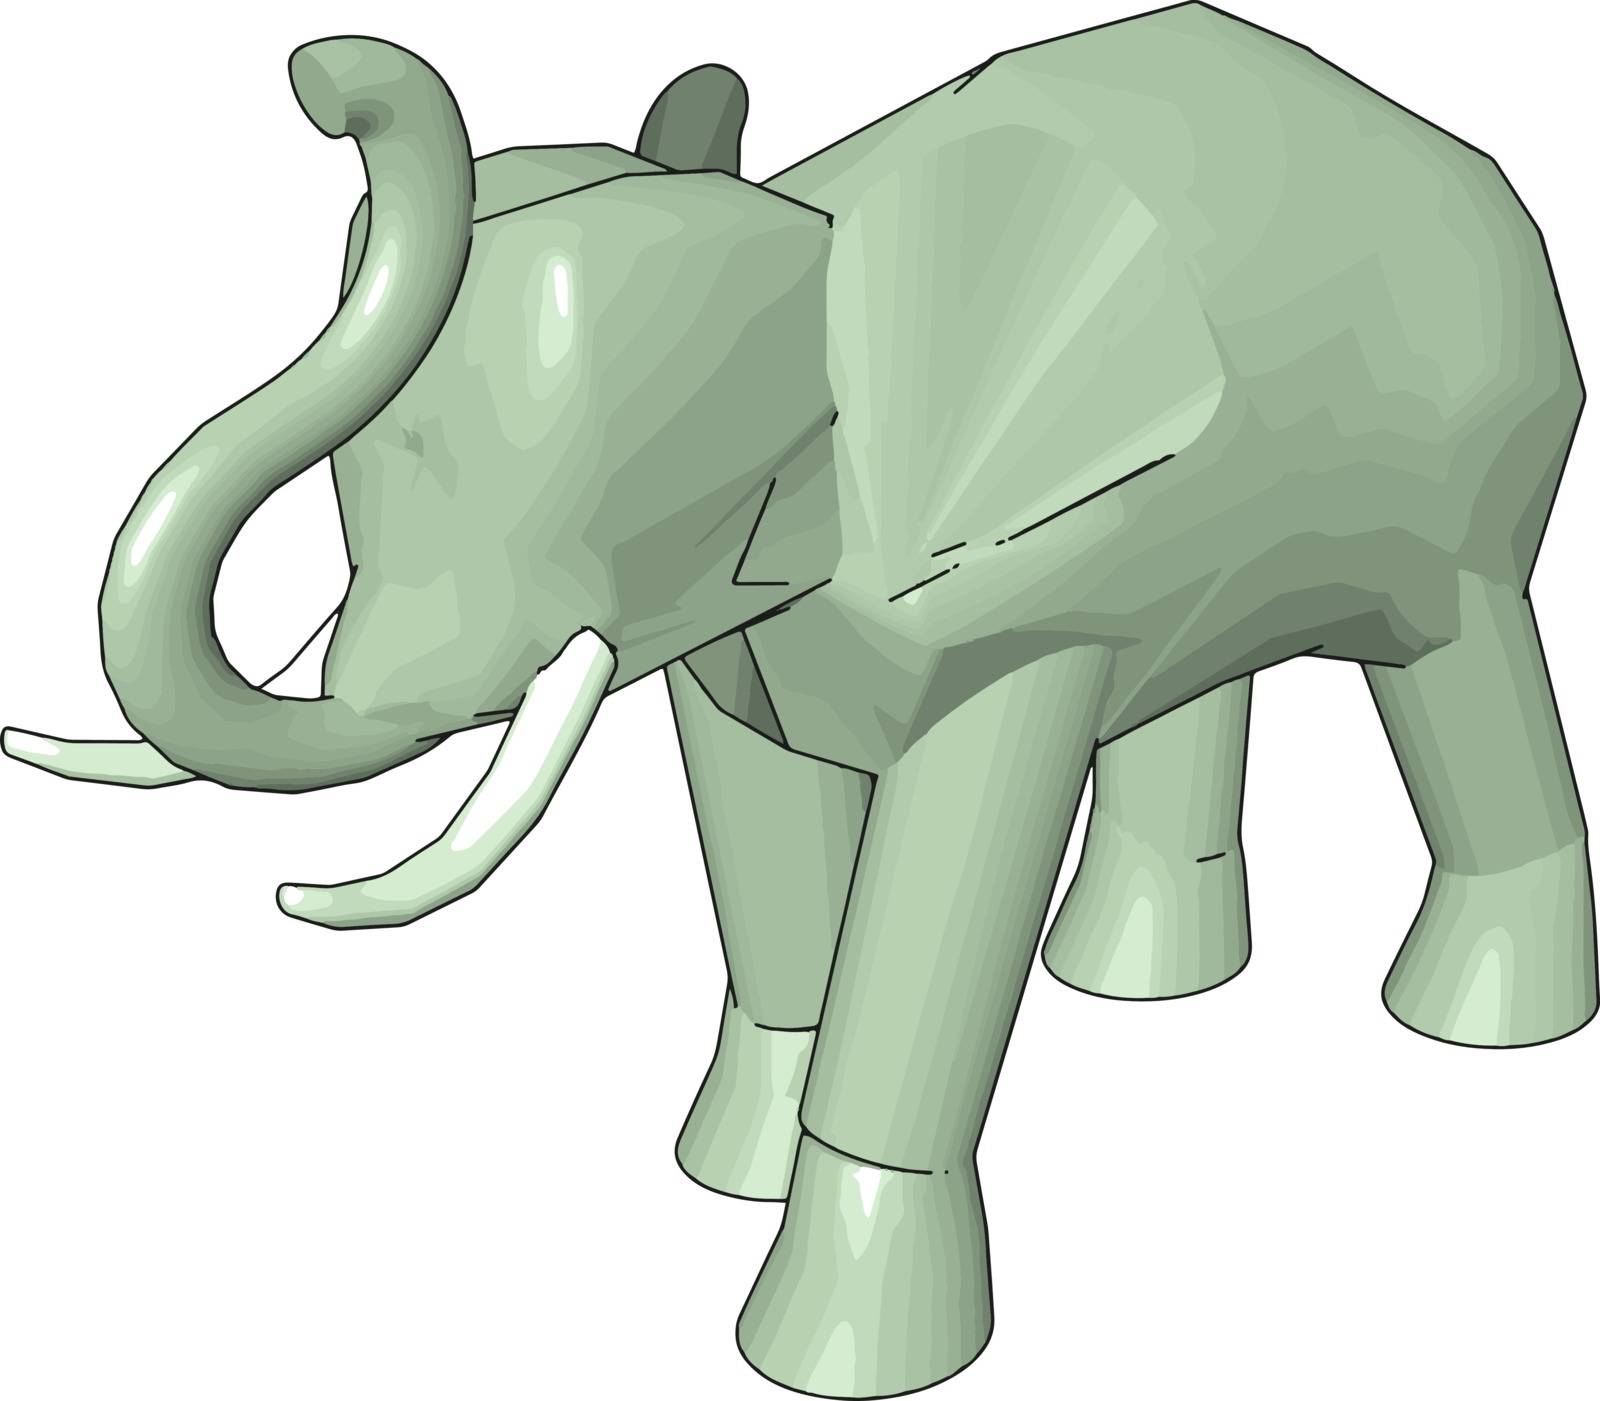 3D model of elephant, illustration, vector on white background.